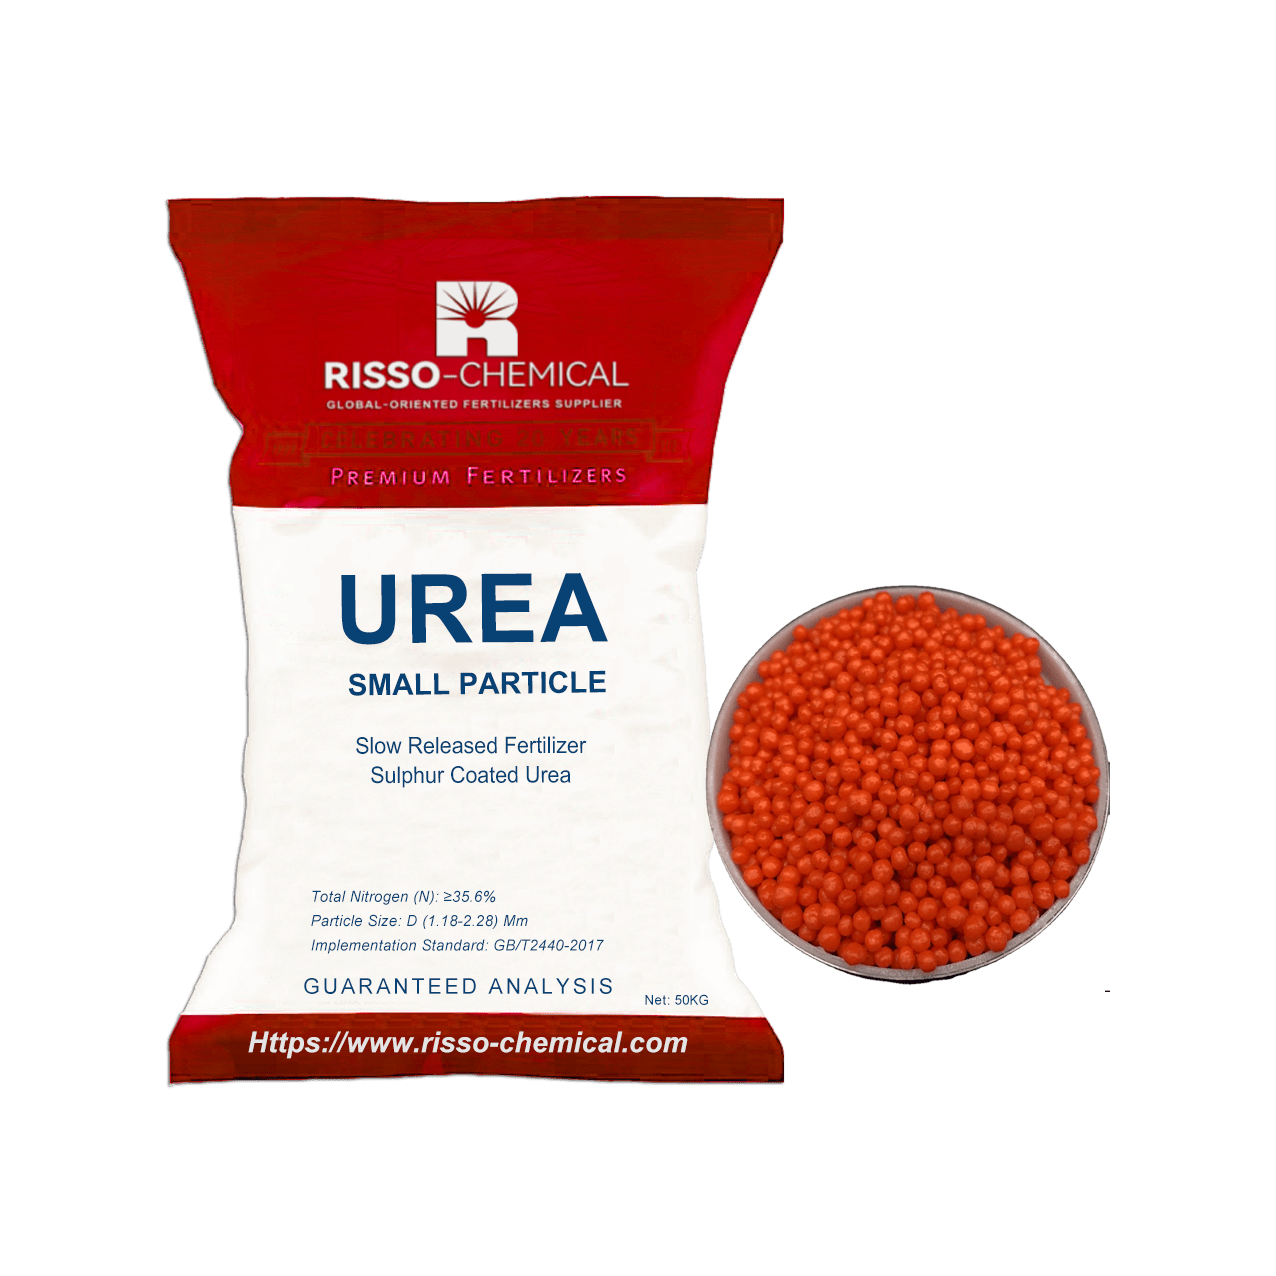 Slow Released Fertilizer Sulphur Coated Urea